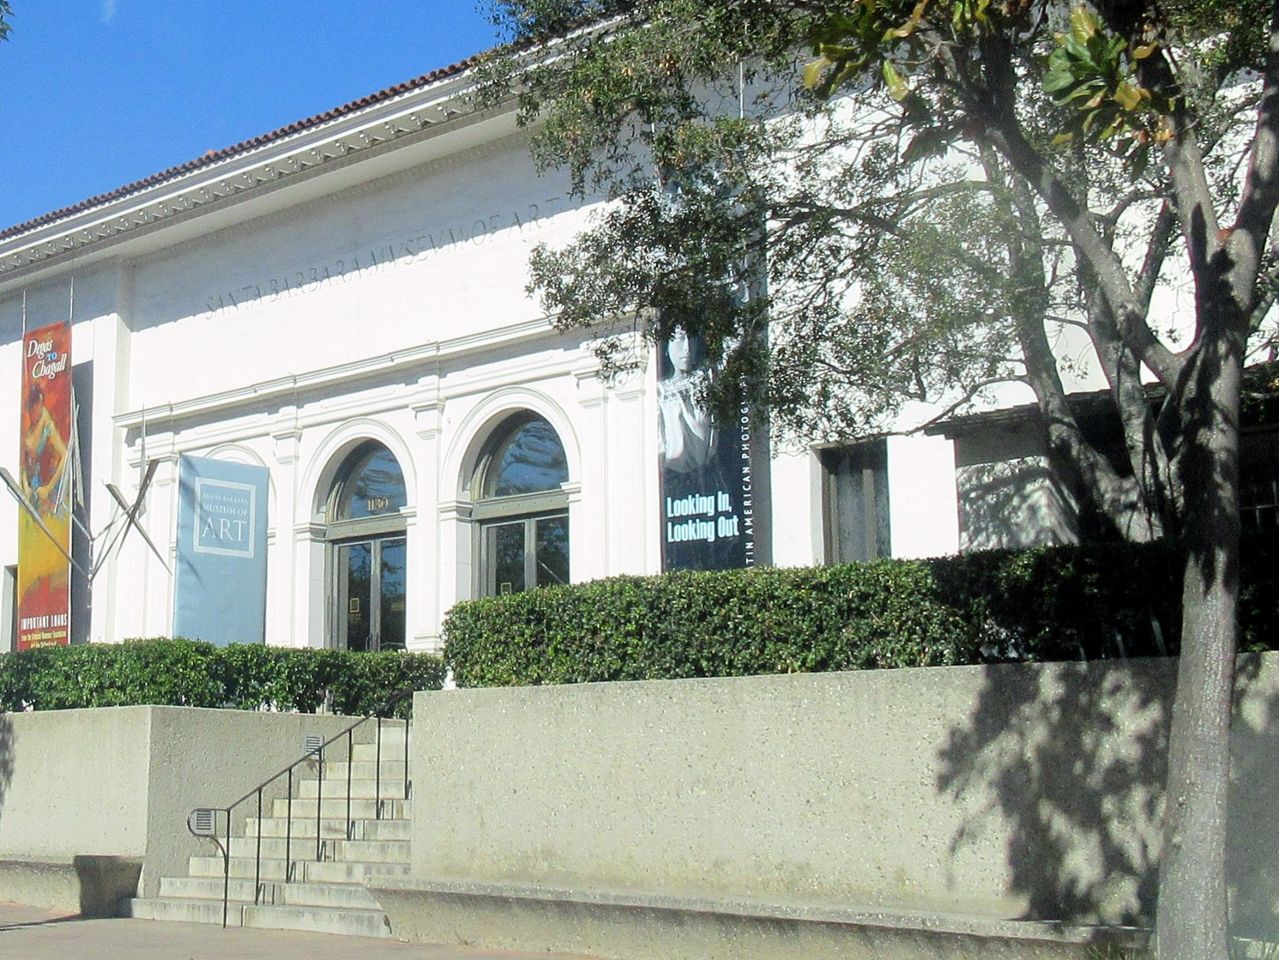 Santa Barbara Museum of Art, State Street, Santa Barbara, Ca